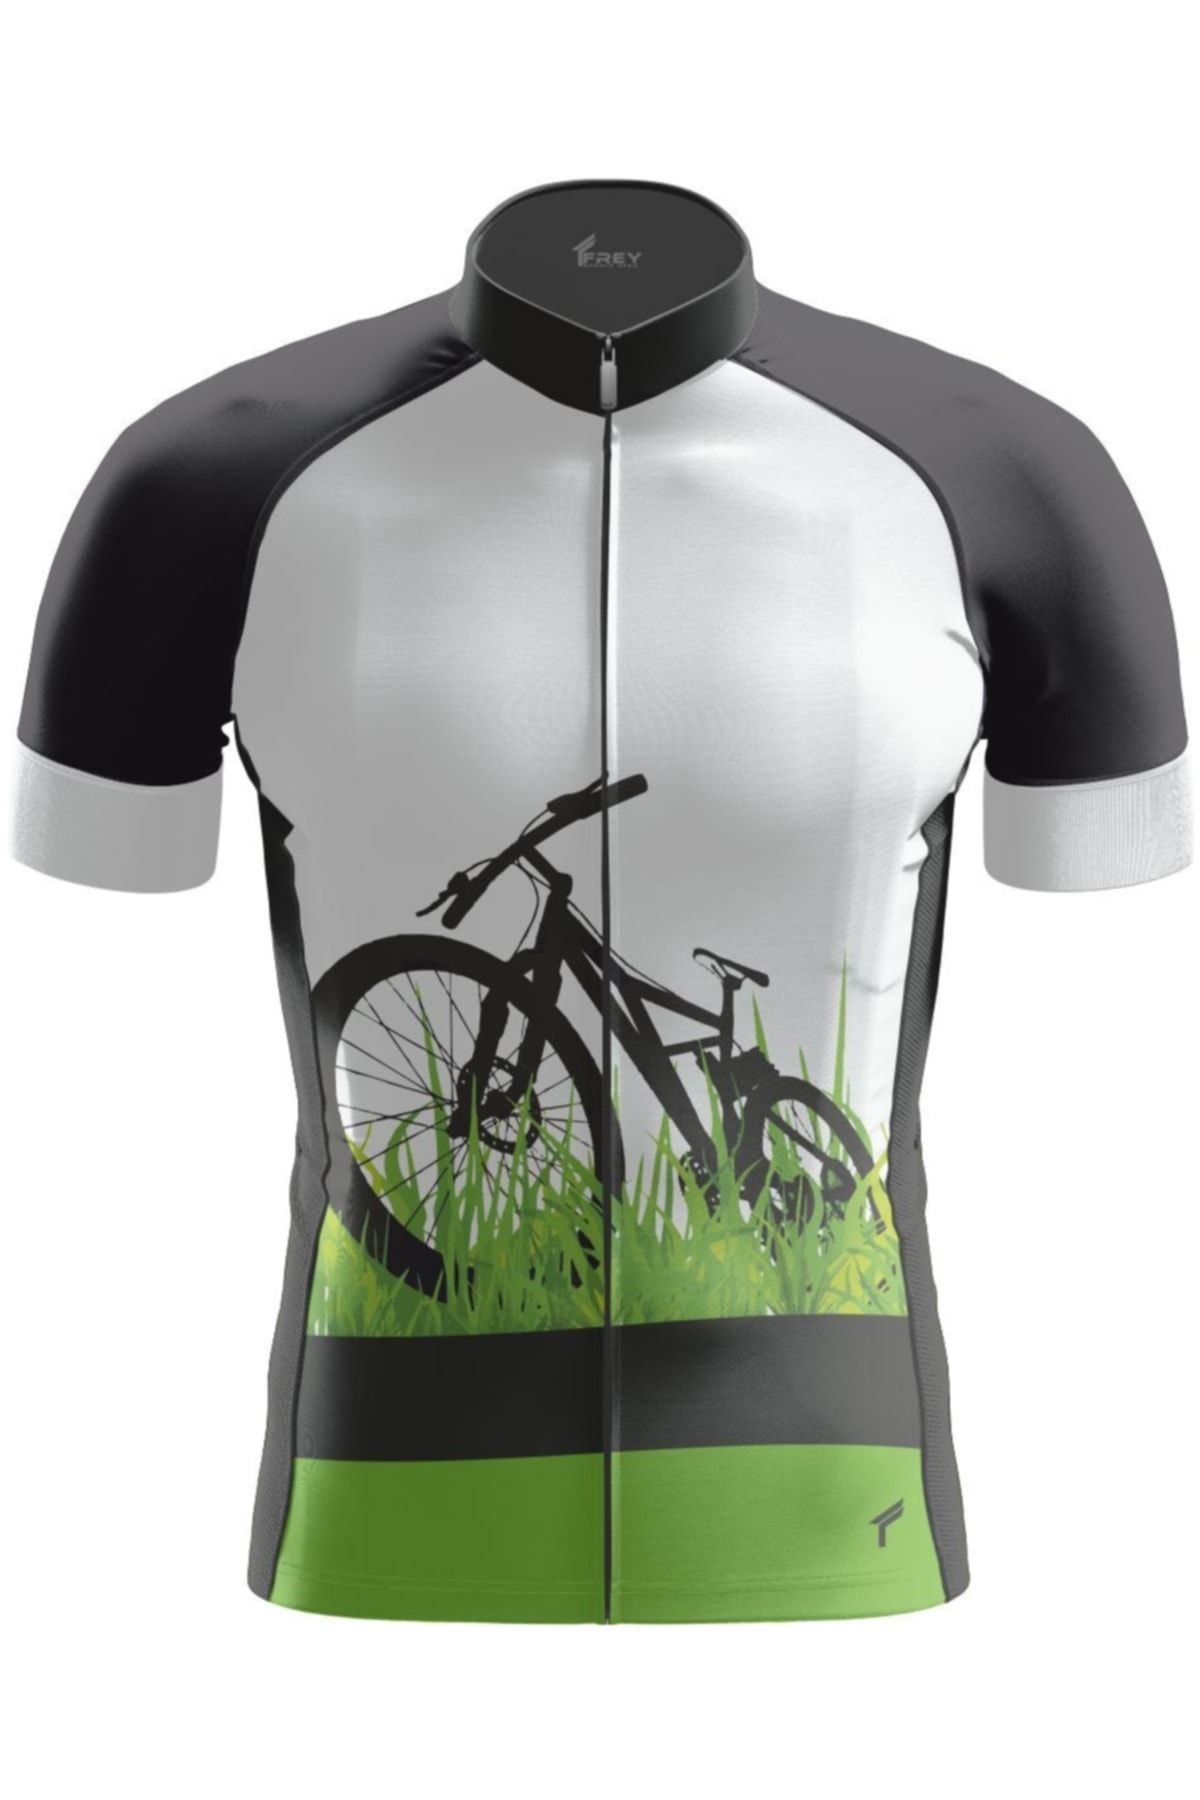 Freysport Grass Yazlık Kısa Kollu Bisiklet Forması